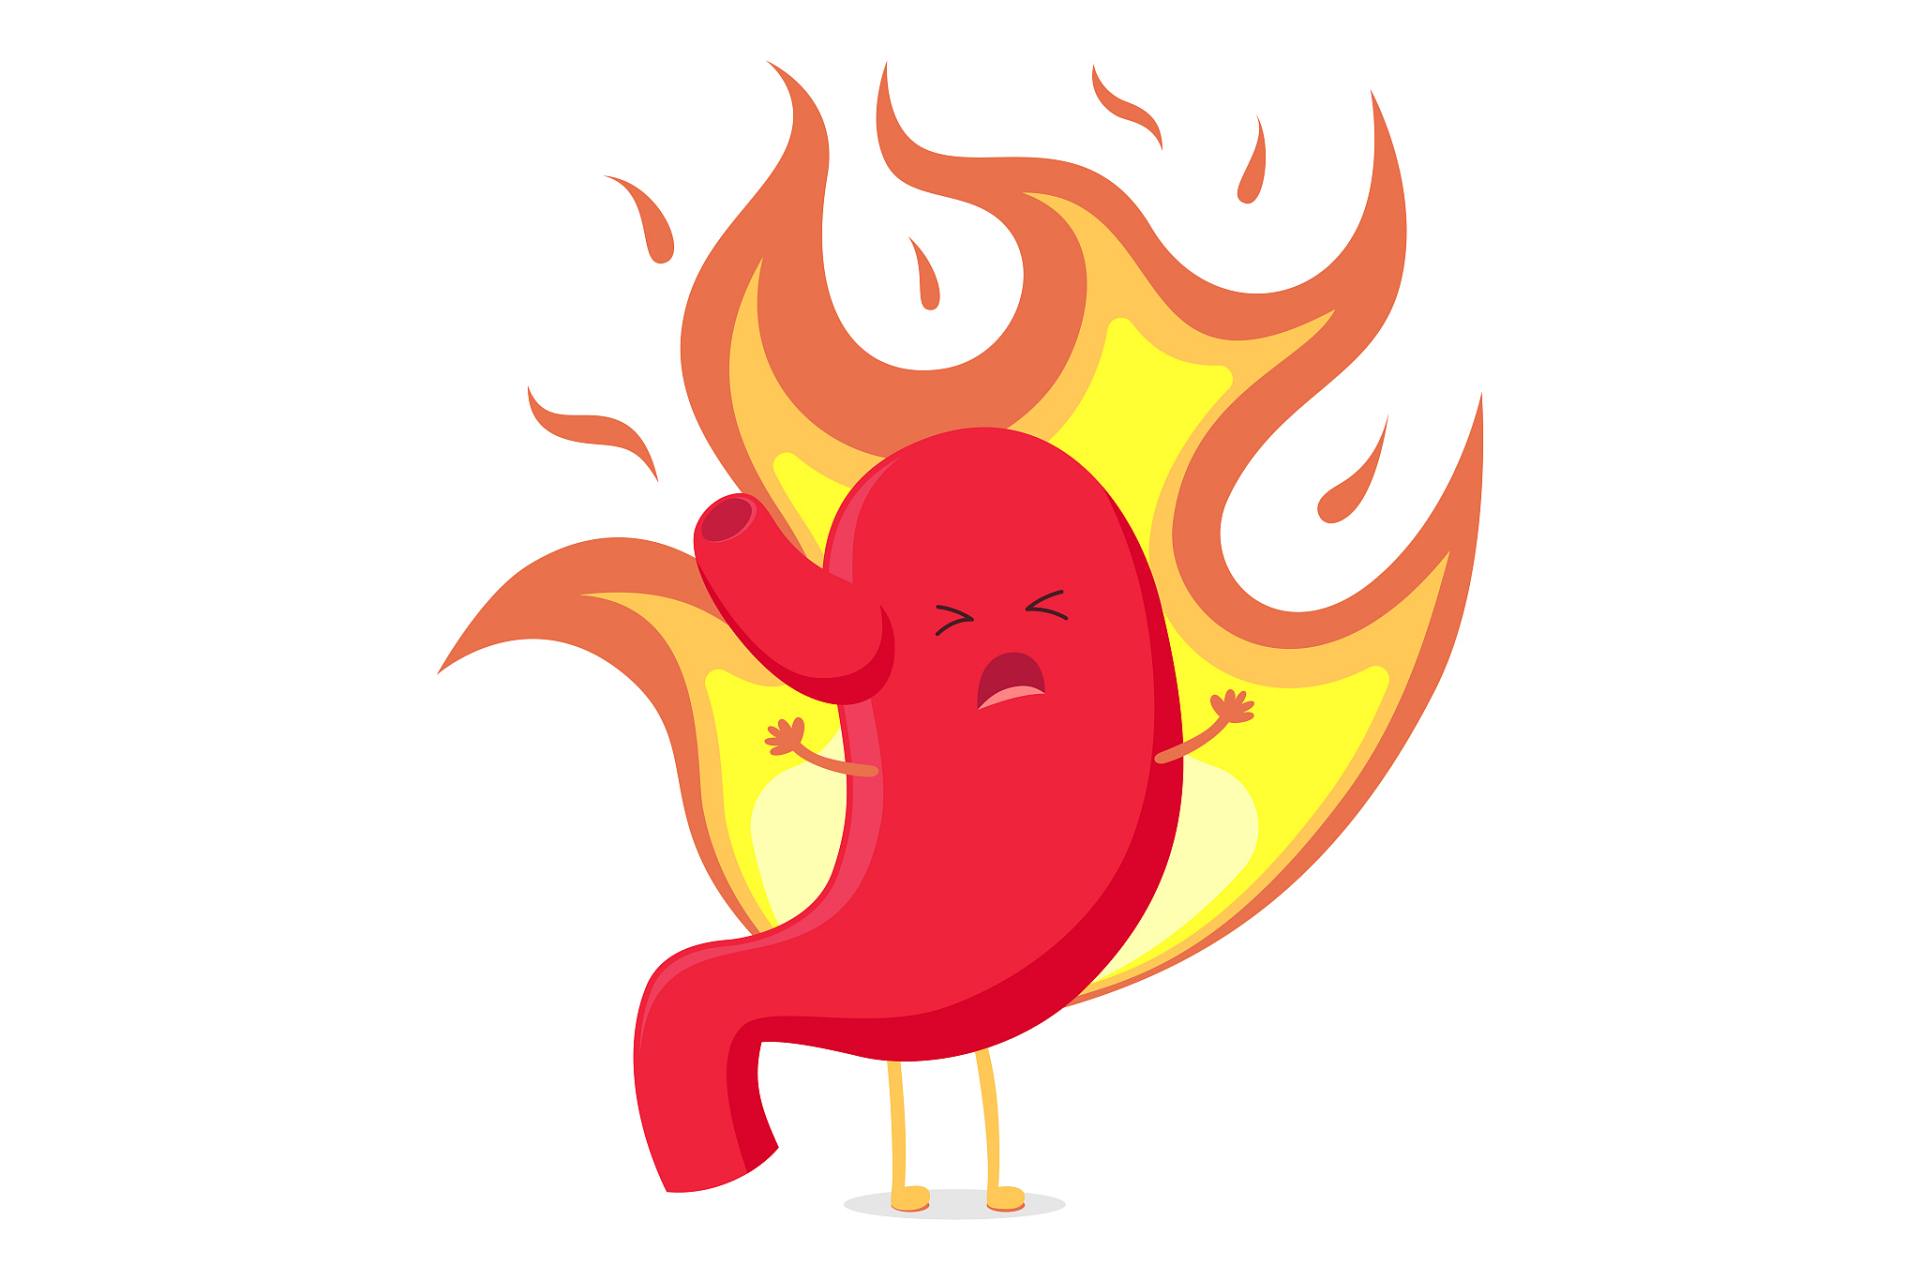 1,胃火 胃肠道有火气,表现为胃部灼热疼痛,腹胀,口干口臭,大便稀烂